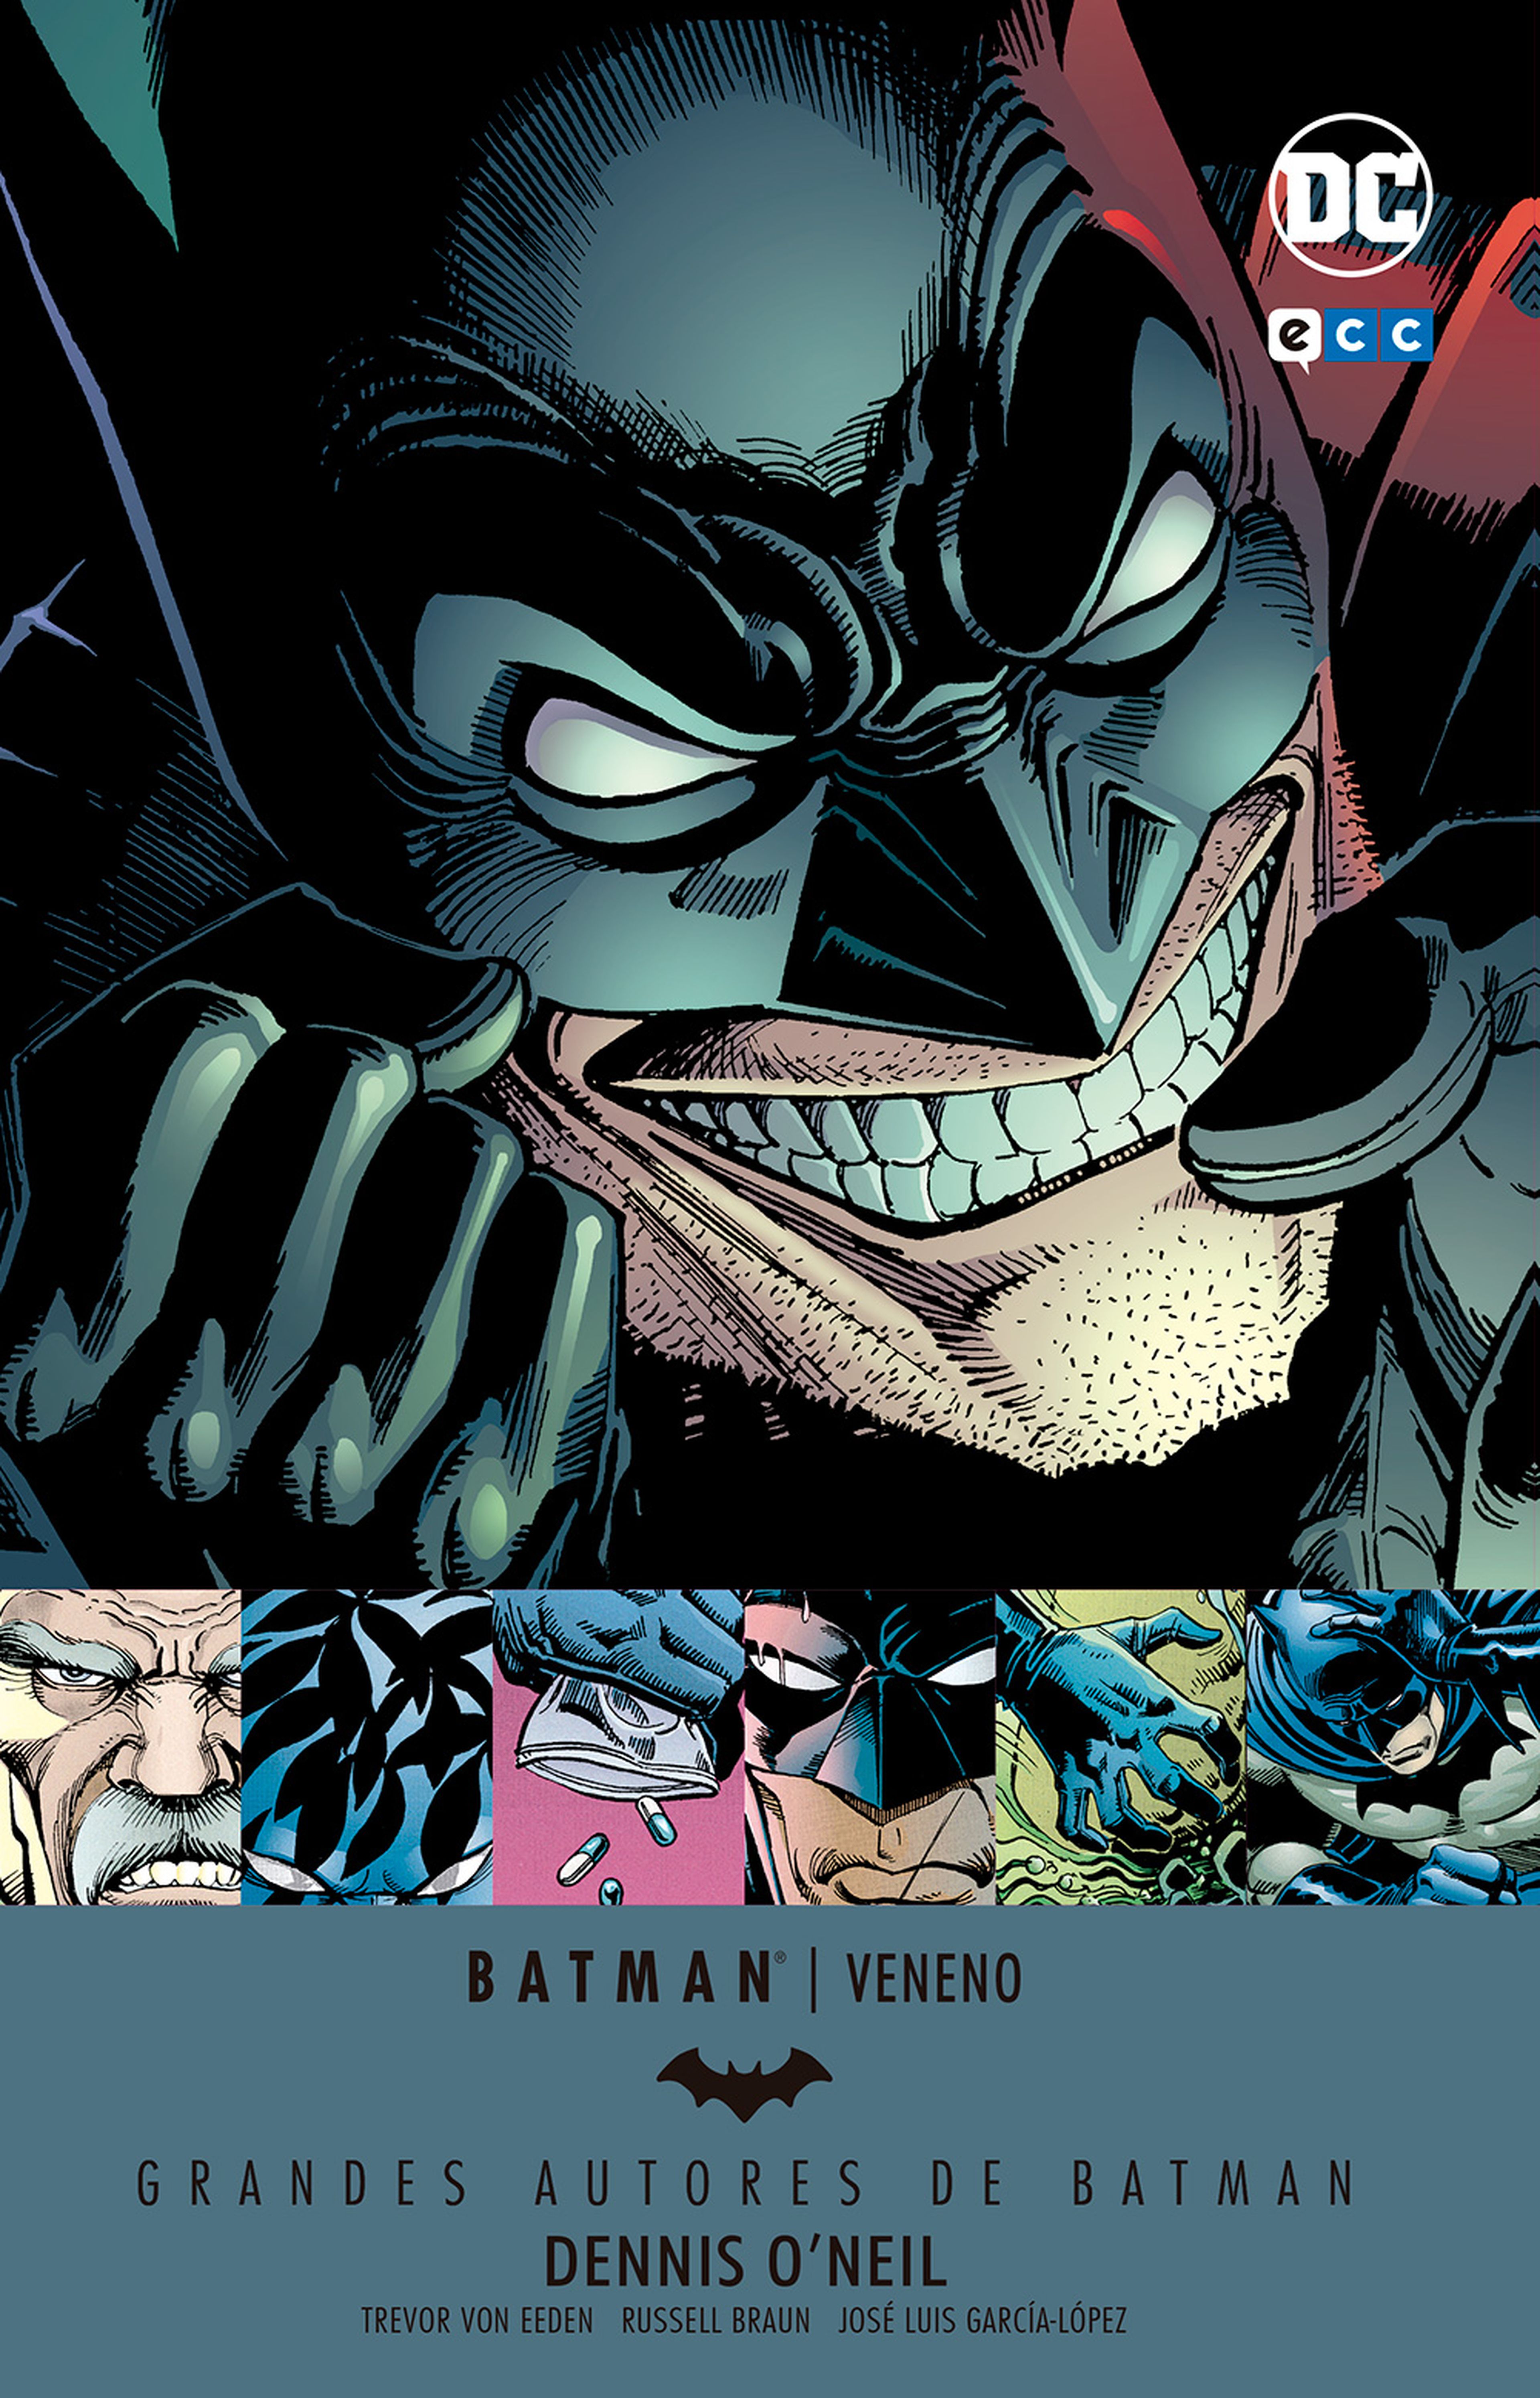 Batman: Veneno (DC Comics)